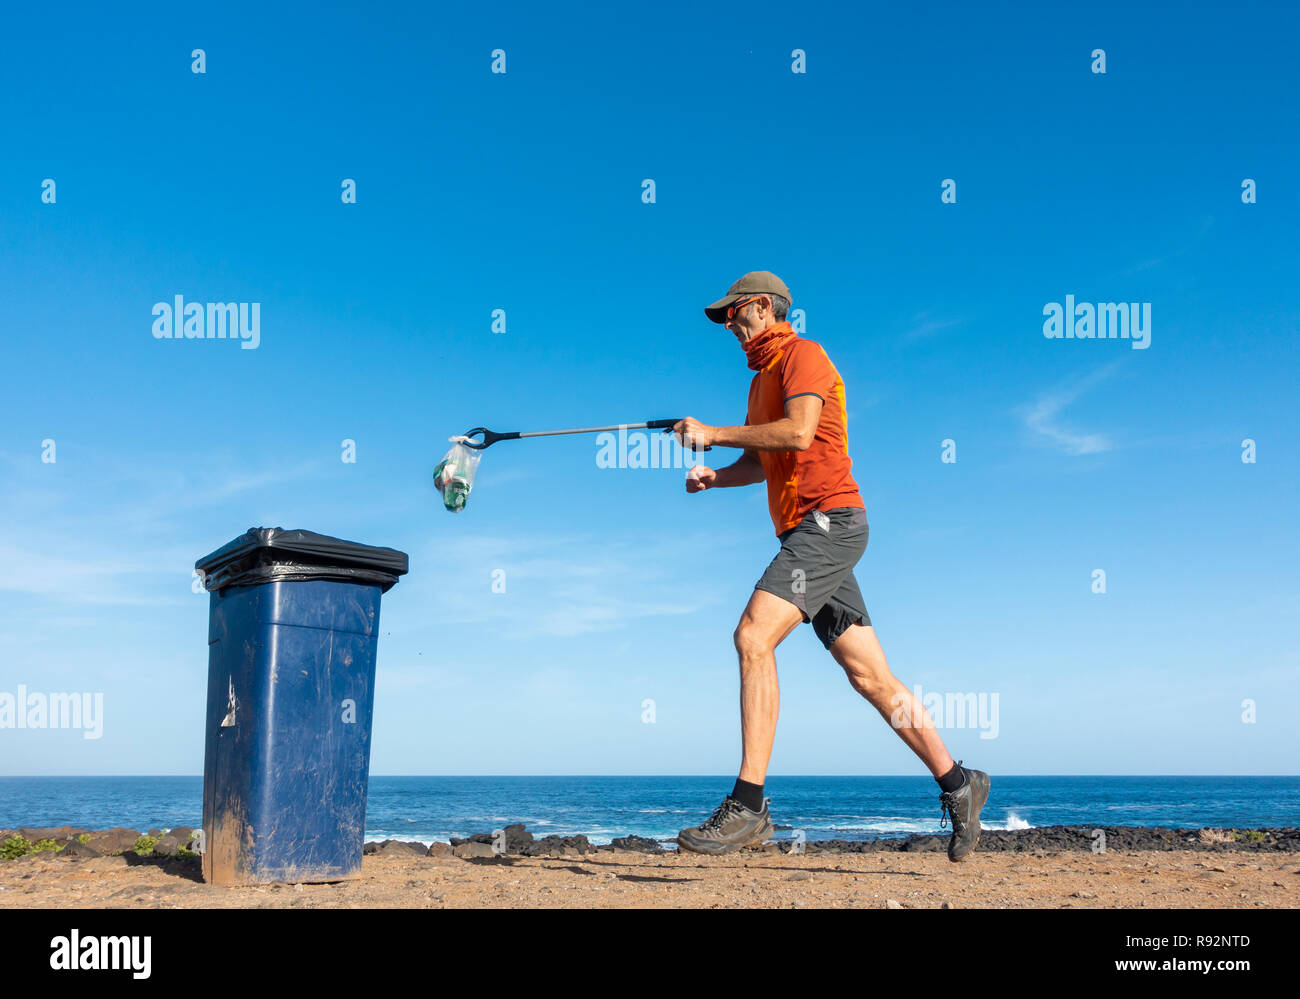 Un Plogger/jogger recueille des ordures en plastique de la plage durant son jogging Banque D'Images